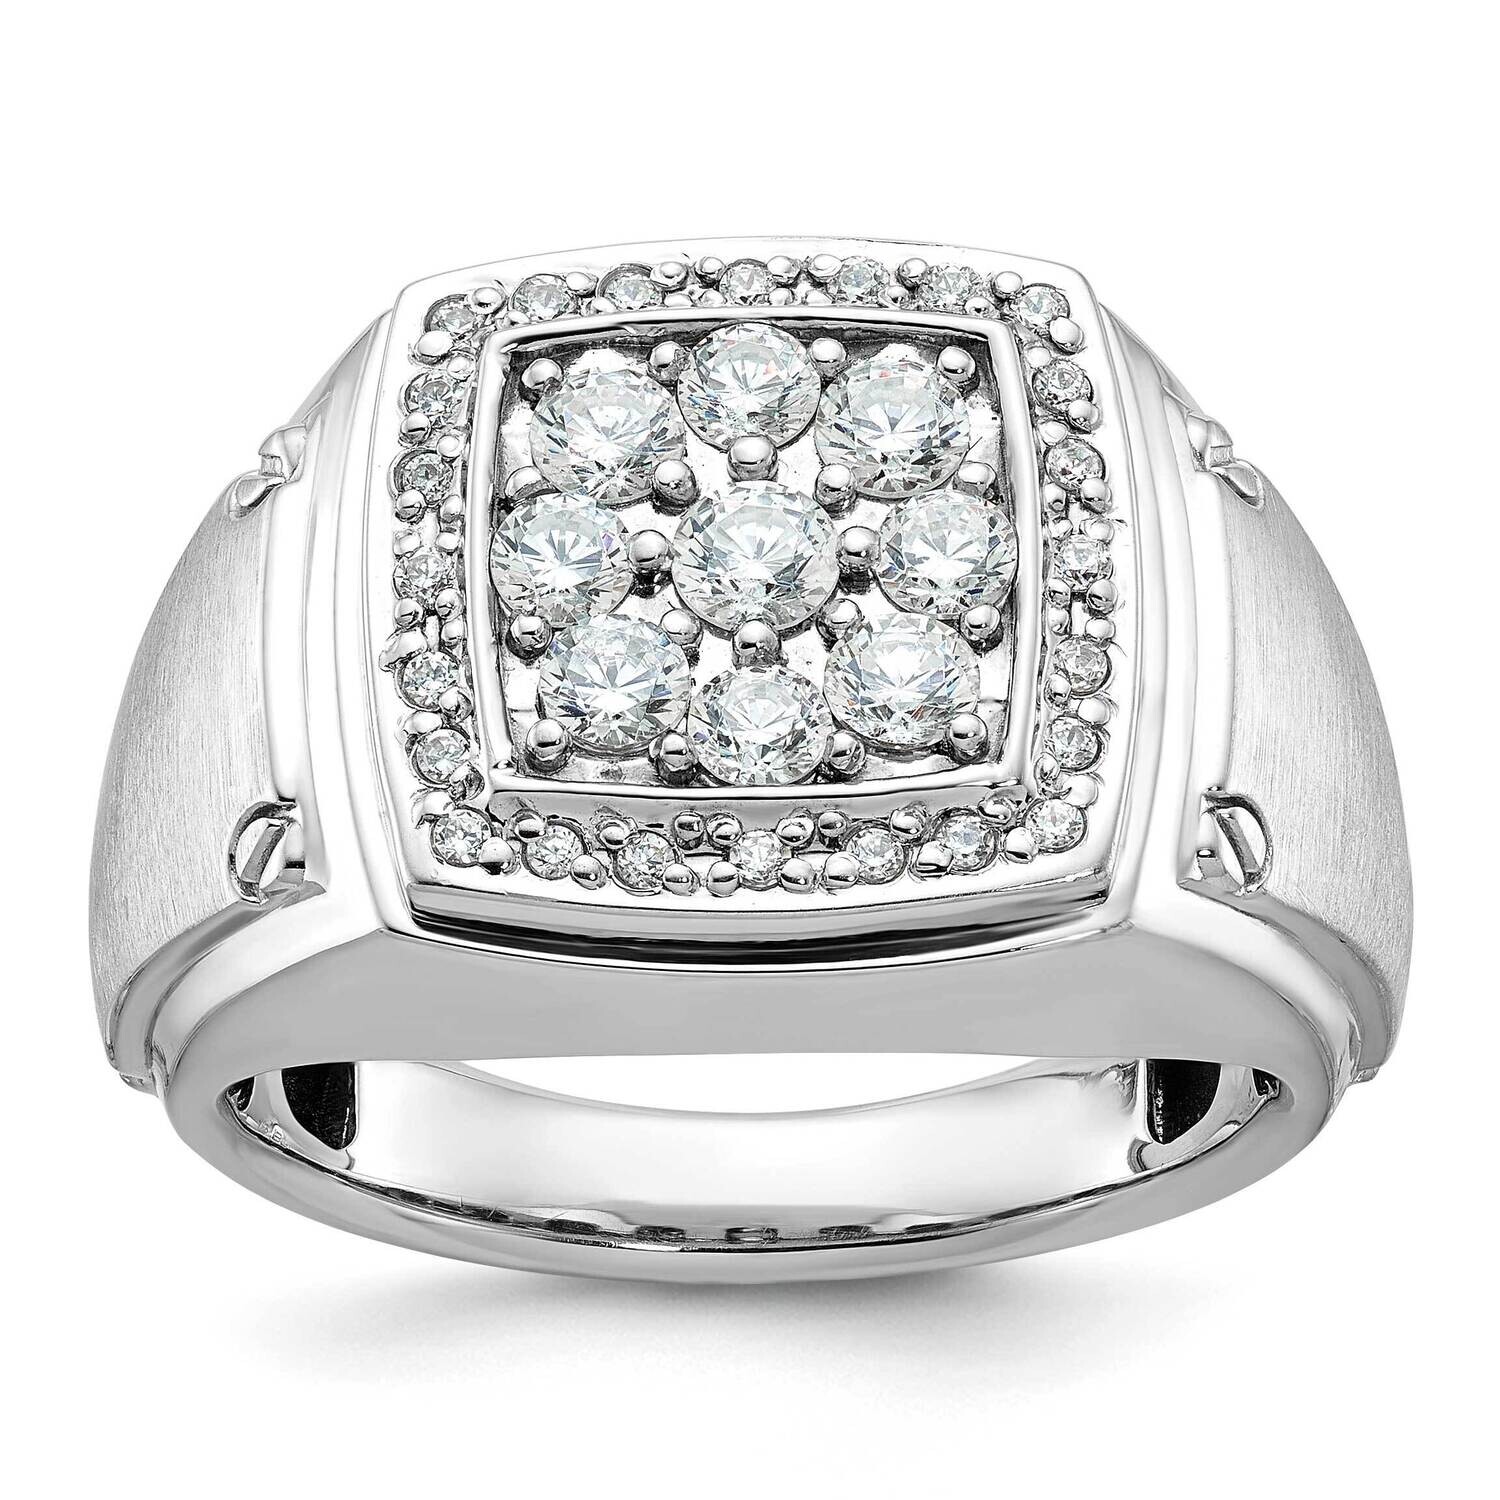 Ibgoodman Men's Polished Satin 1 Carat Diamond Complete Ring 14k White Gold B59163-4WAA